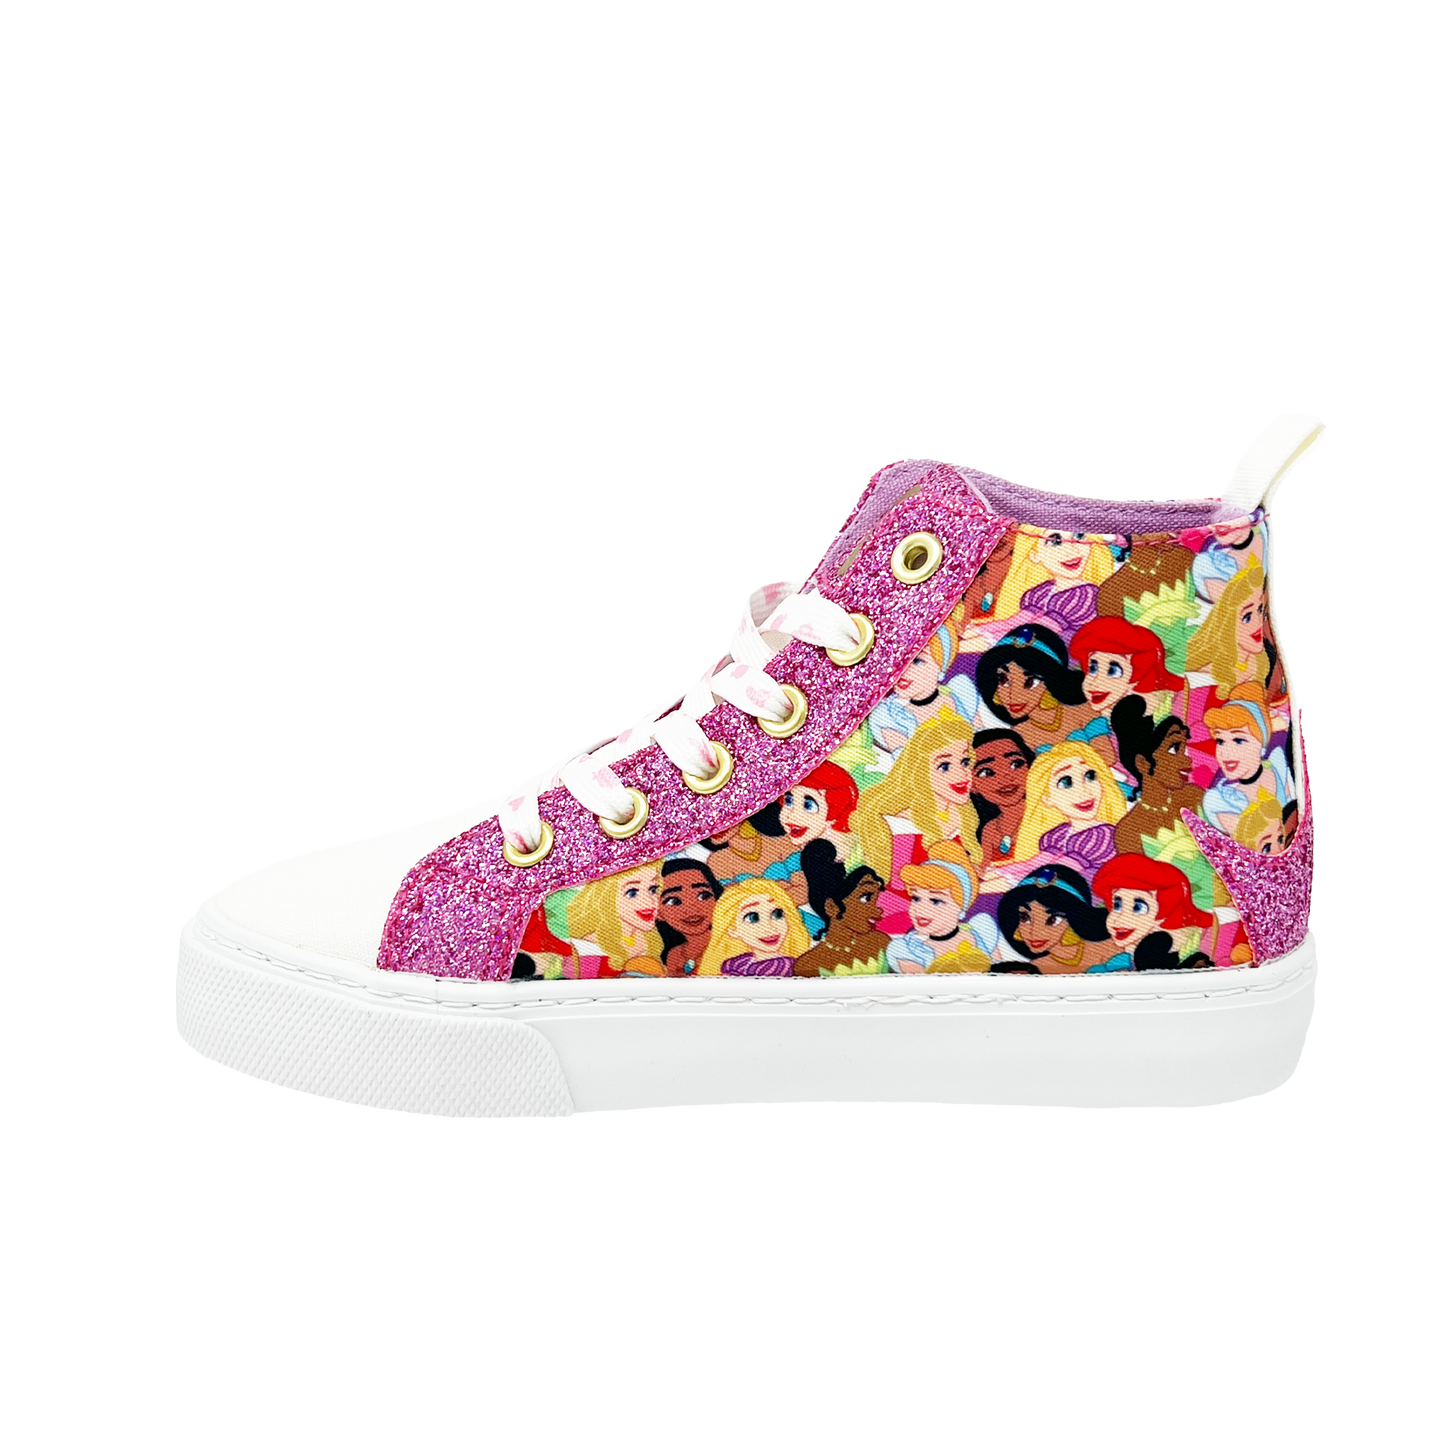 Disney Princess High Top Sneakers